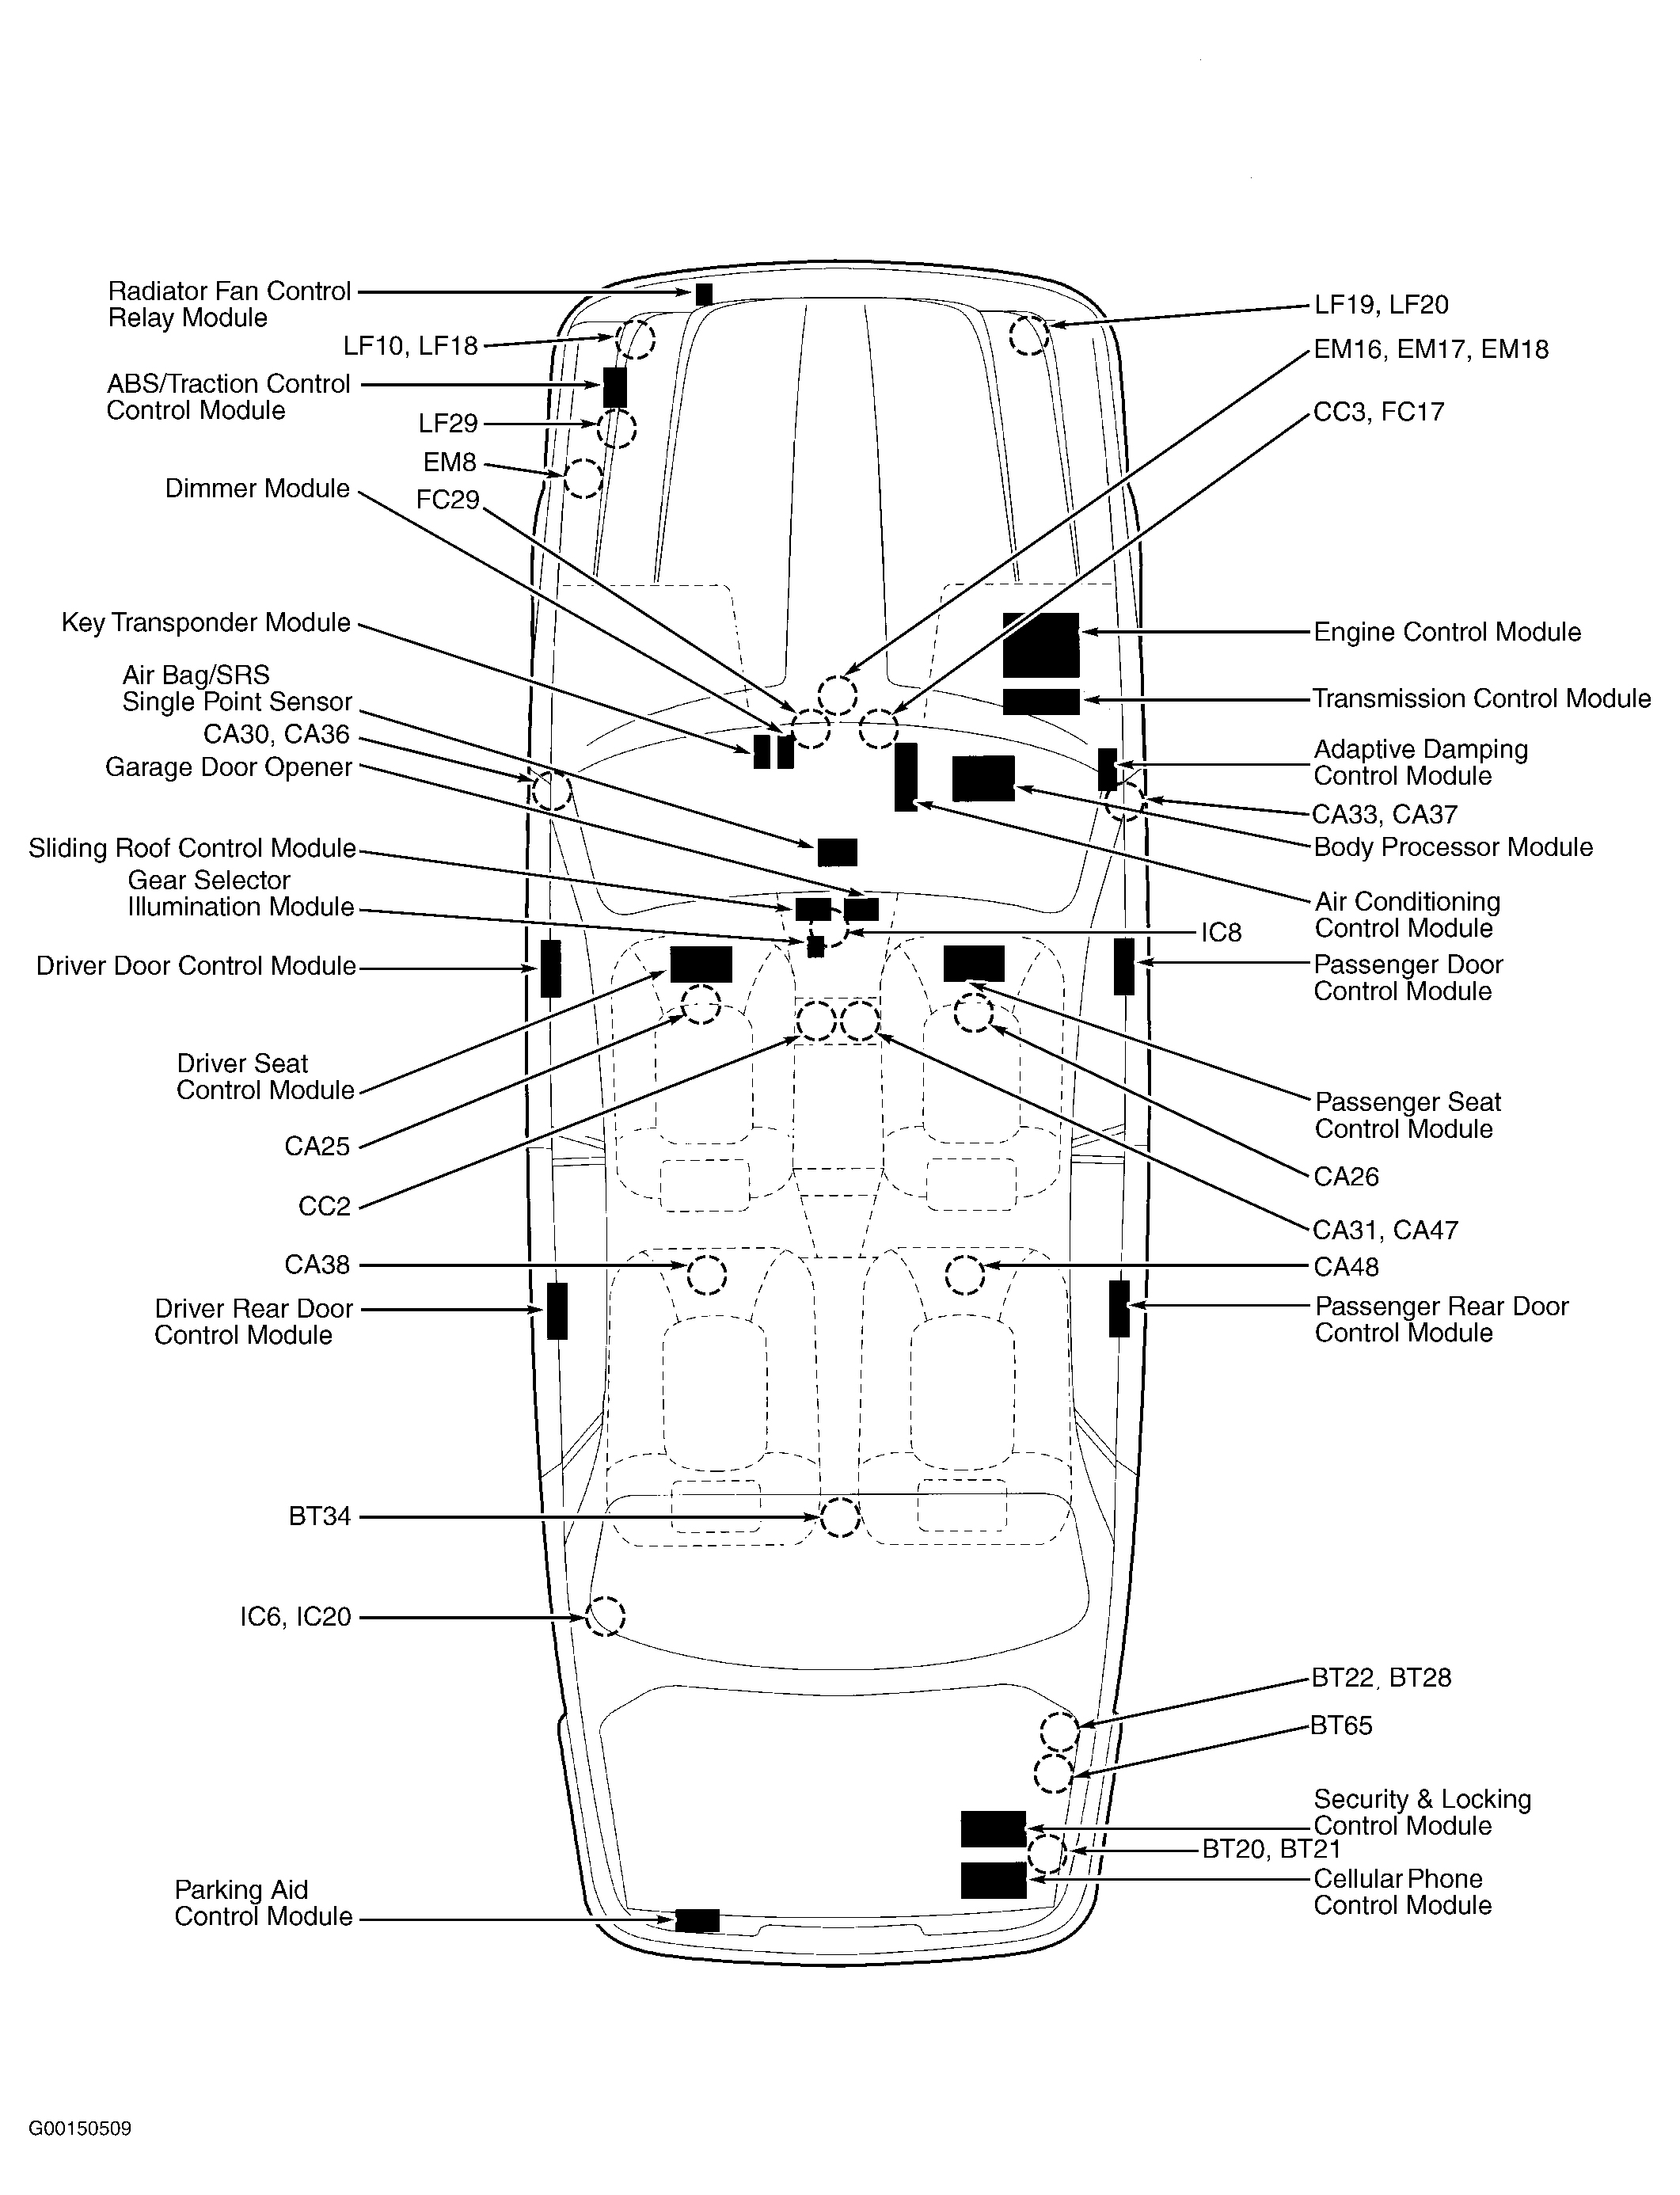 Jaguar XJ Sport 2003 - Component Locations -  Vehicle Overview